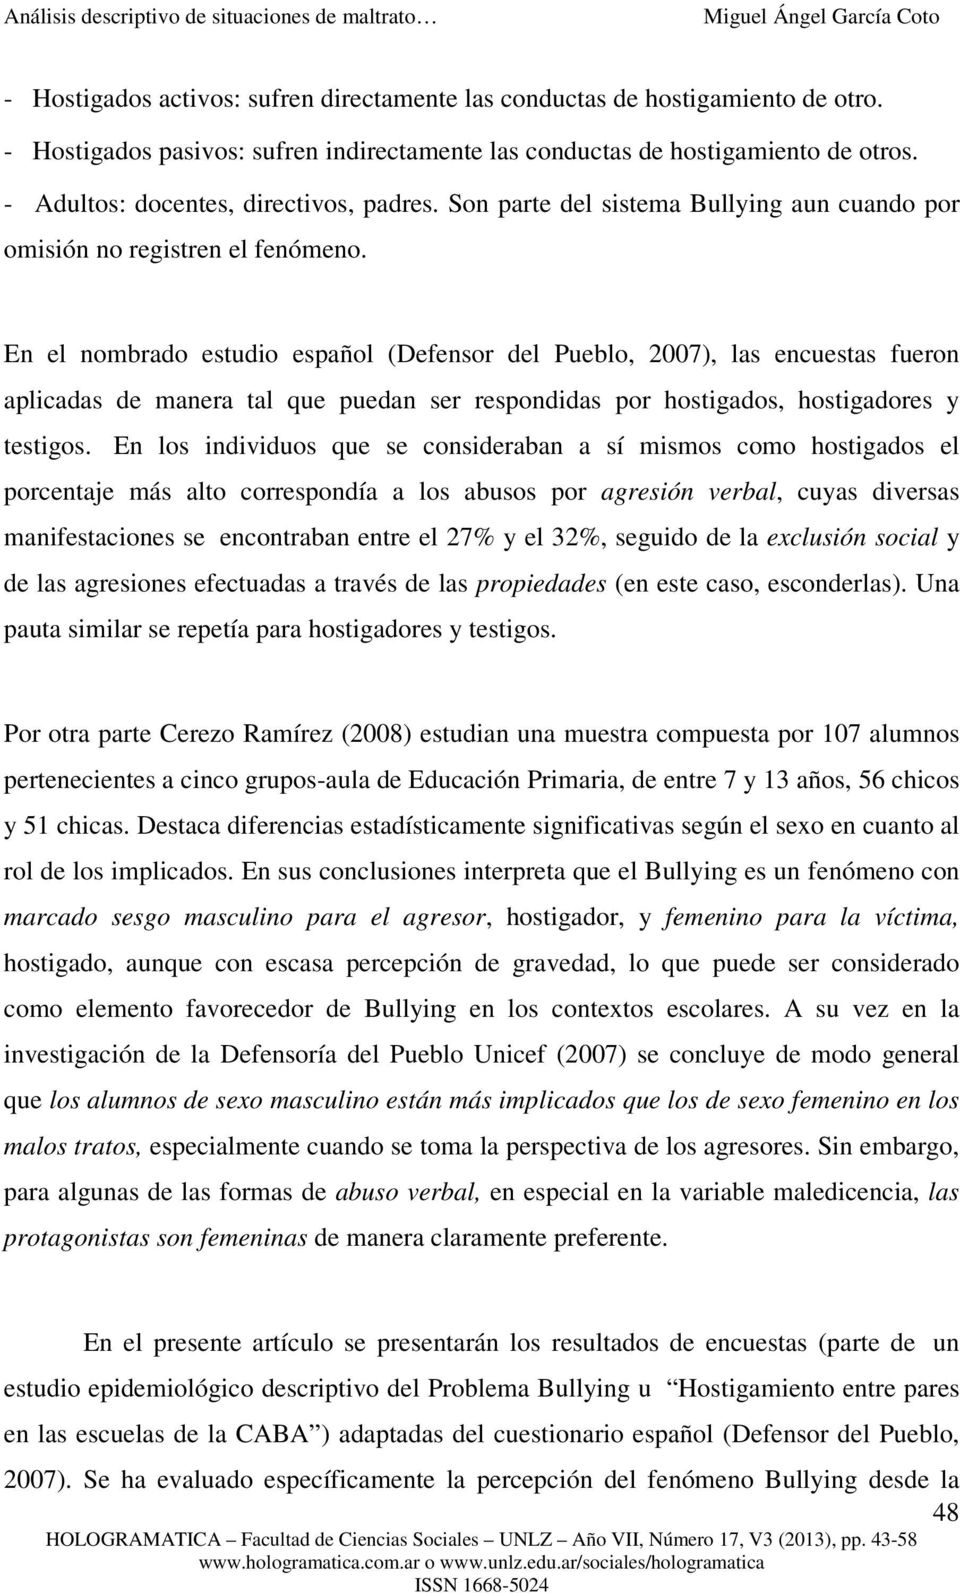 En el nombrado estudio español (Defensor del Pueblo, 2007), las encuestas fueron aplicadas de manera tal que puedan ser respondidas por hostigados, hostigadores y testigos.